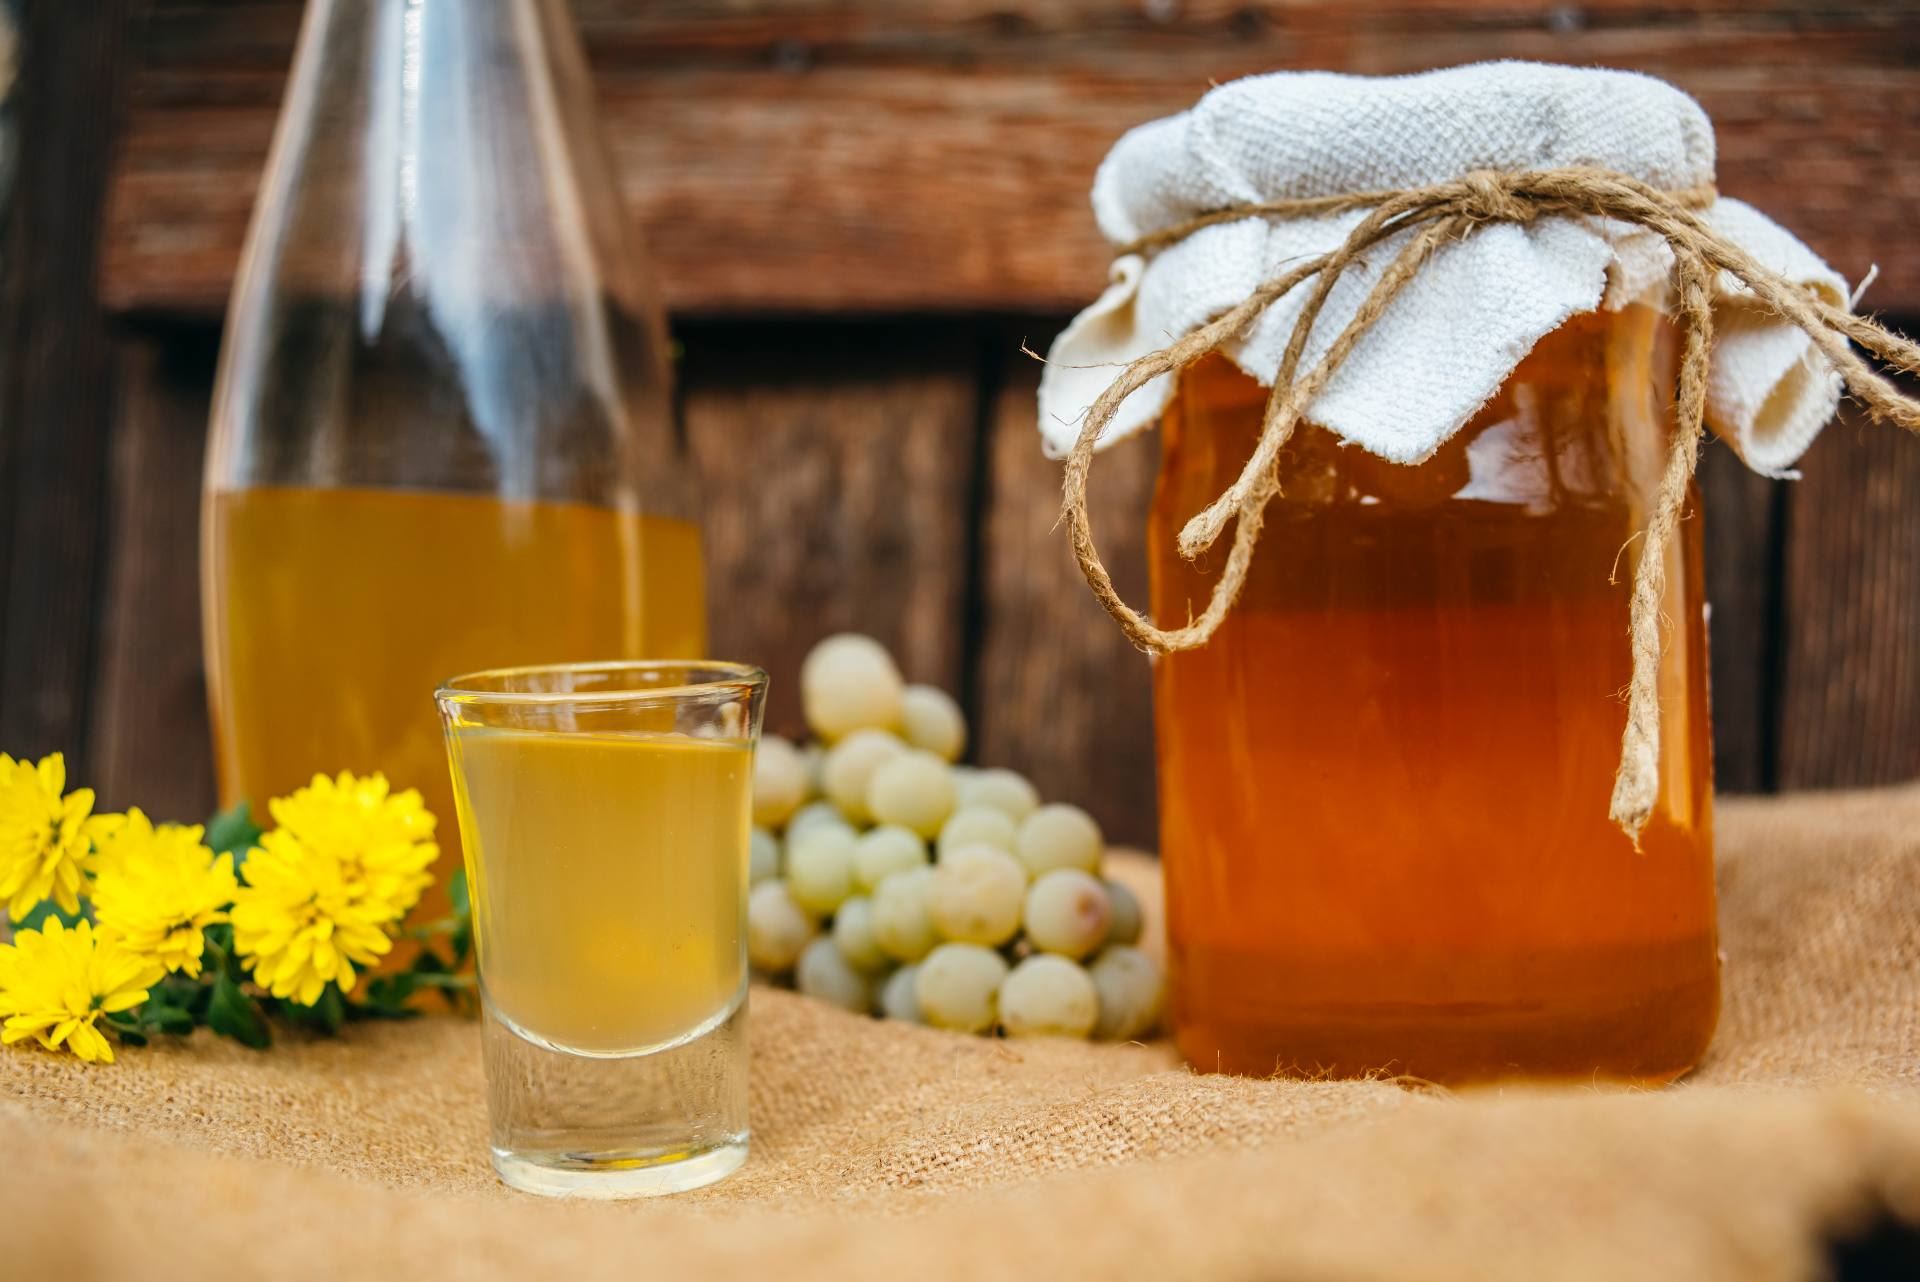 Medica, medovača or sweet tasting honey brandy | Croatia.hr